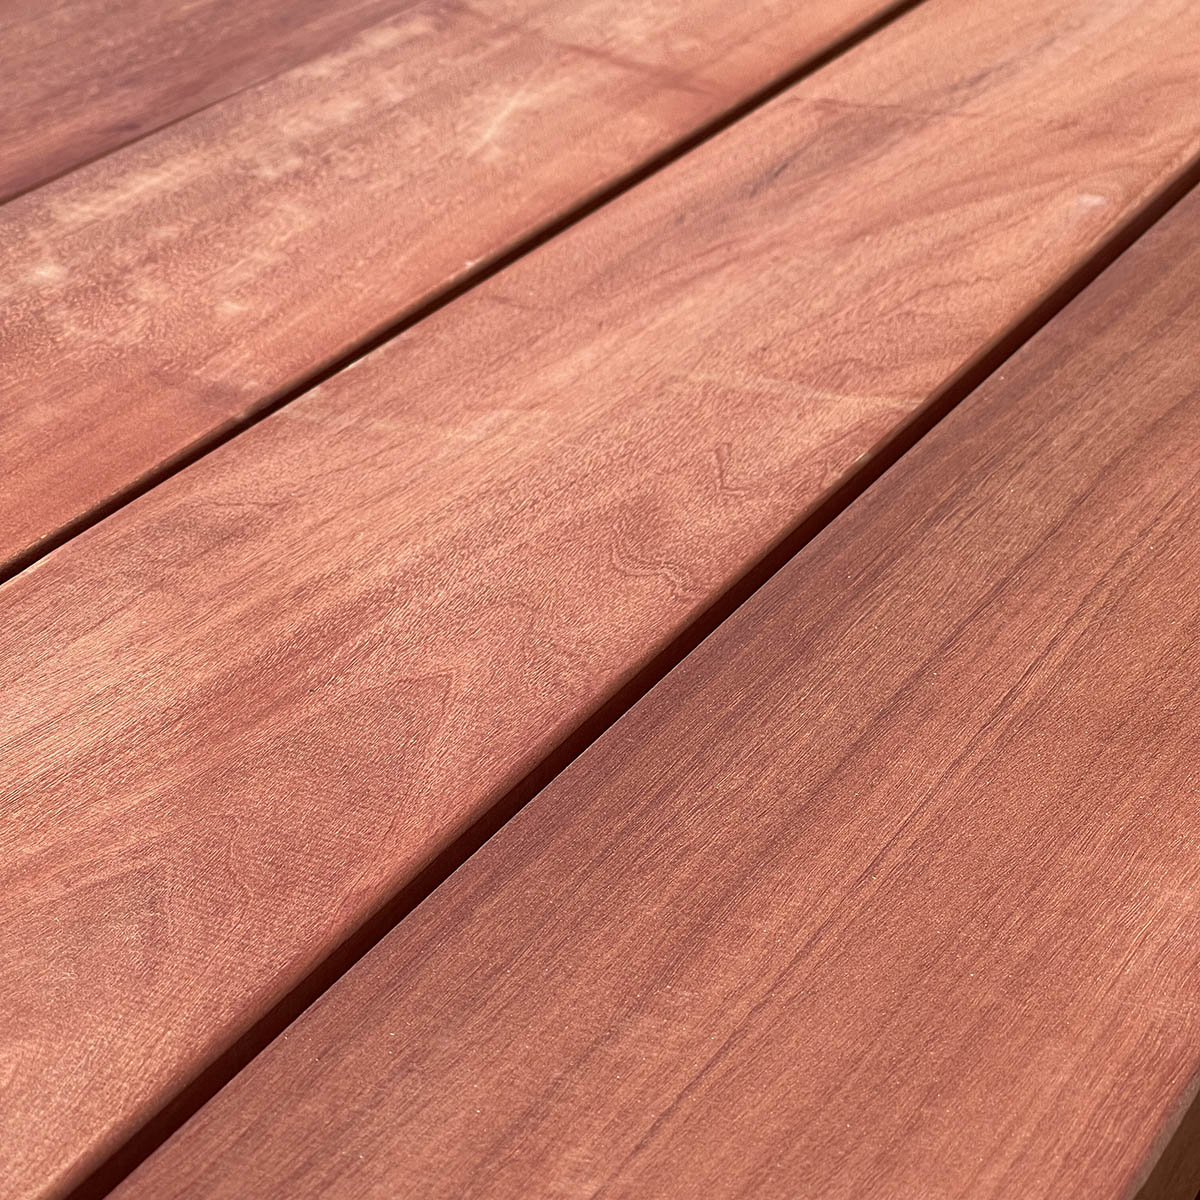 South Pacific Redwood 5/4x6 Decking | Torem, Manilkara 5/4x6 Hardwood